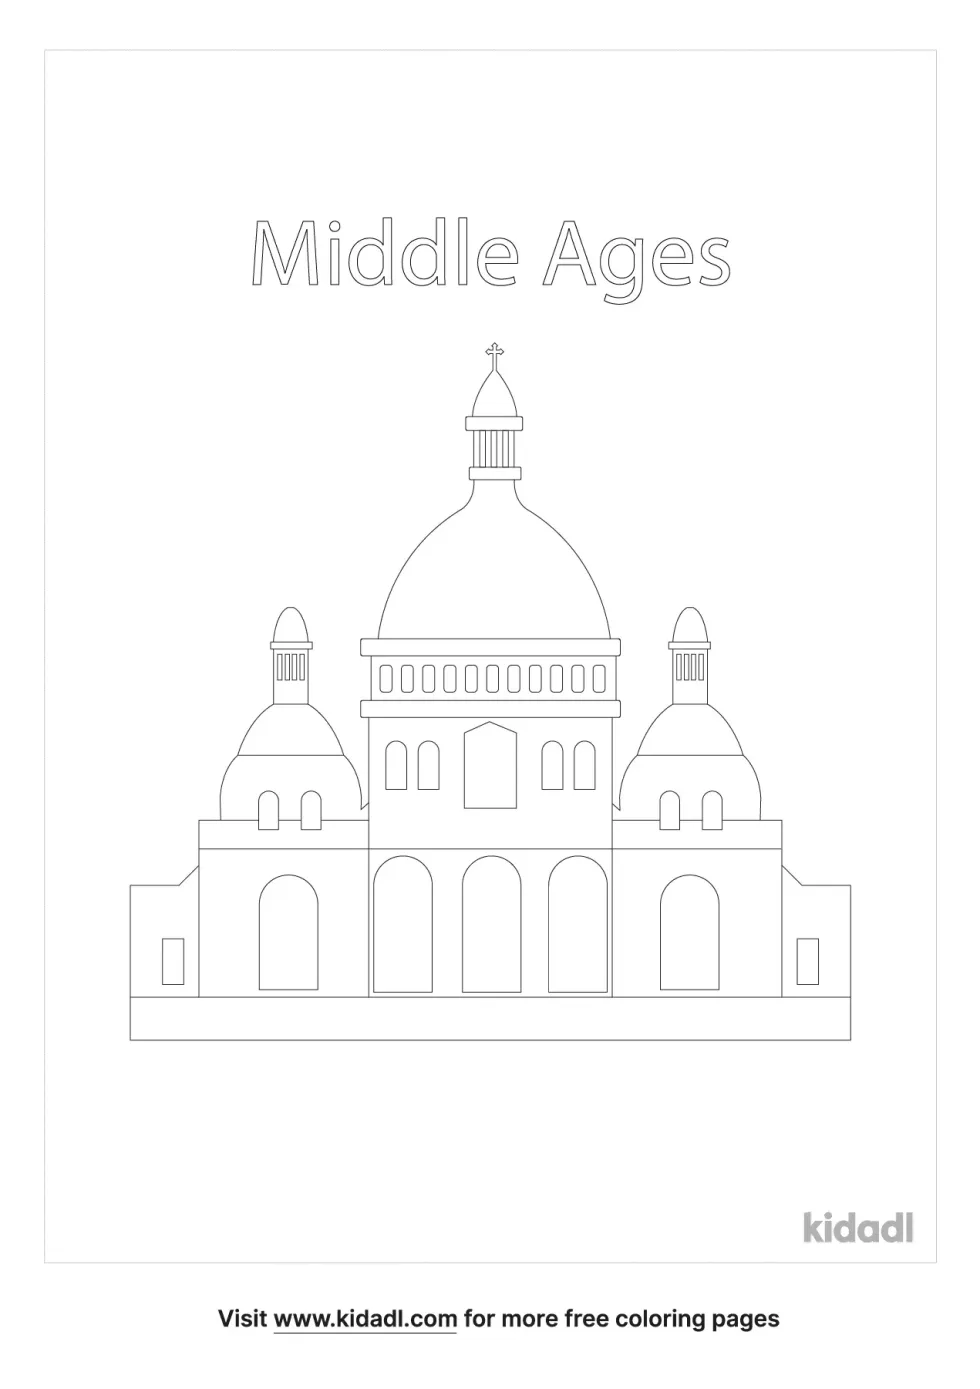 Paris Middle Ages Coloring Page